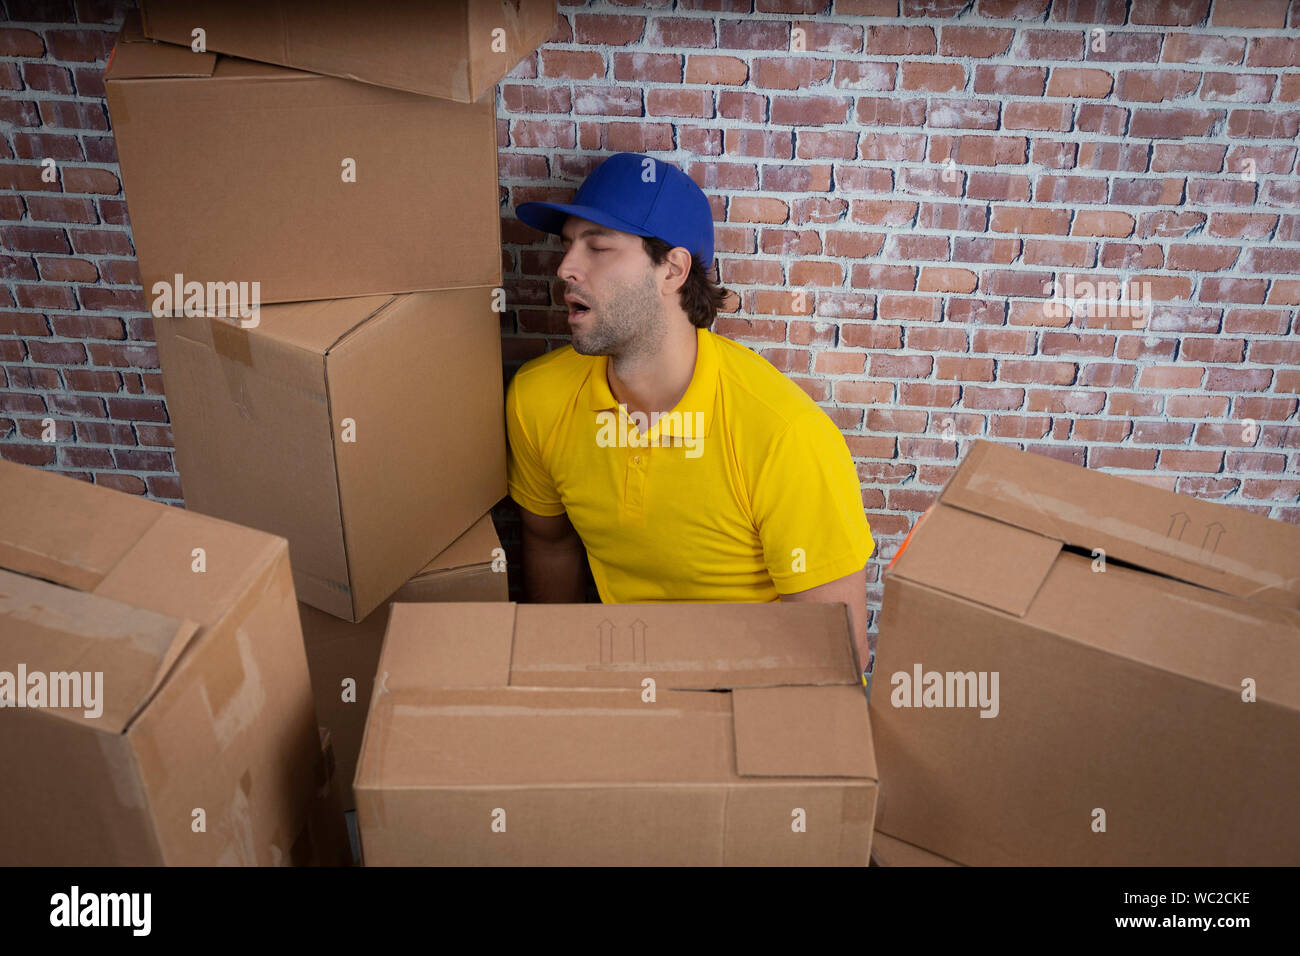 Mailman brasileño durmiendo en un depósito con un montón de cajas. Foto de stock